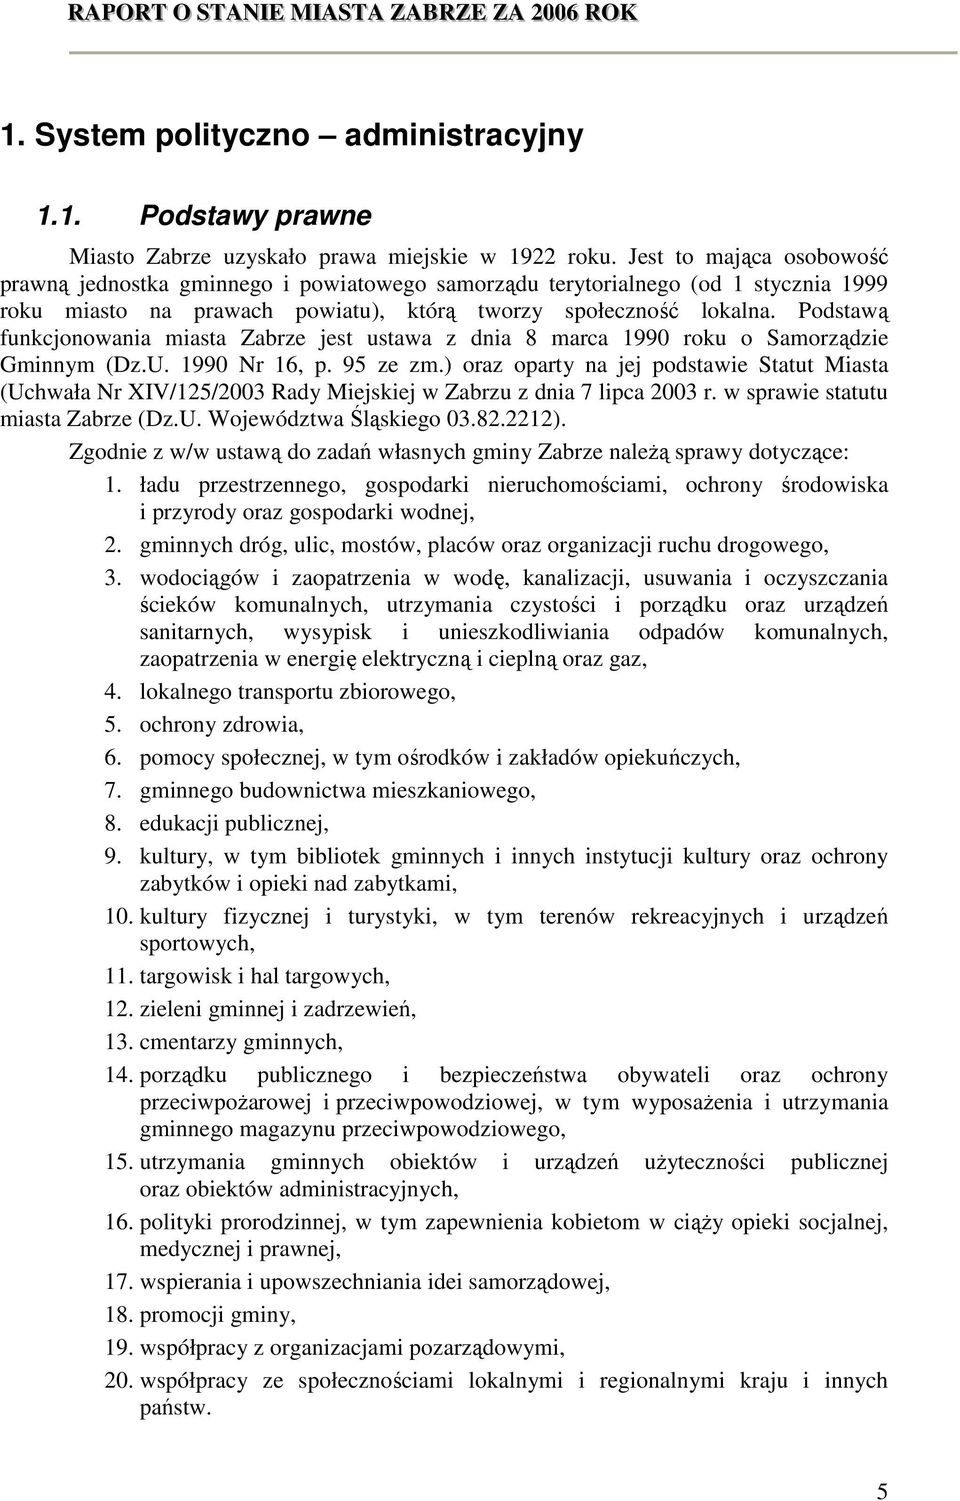 Podstawą funkcjonowania miasta Zabrze jest ustawa z dnia 8 marca 1990 roku o Samorządzie Gminnym (Dz.U. 1990 Nr 16, p. 95 ze zm.